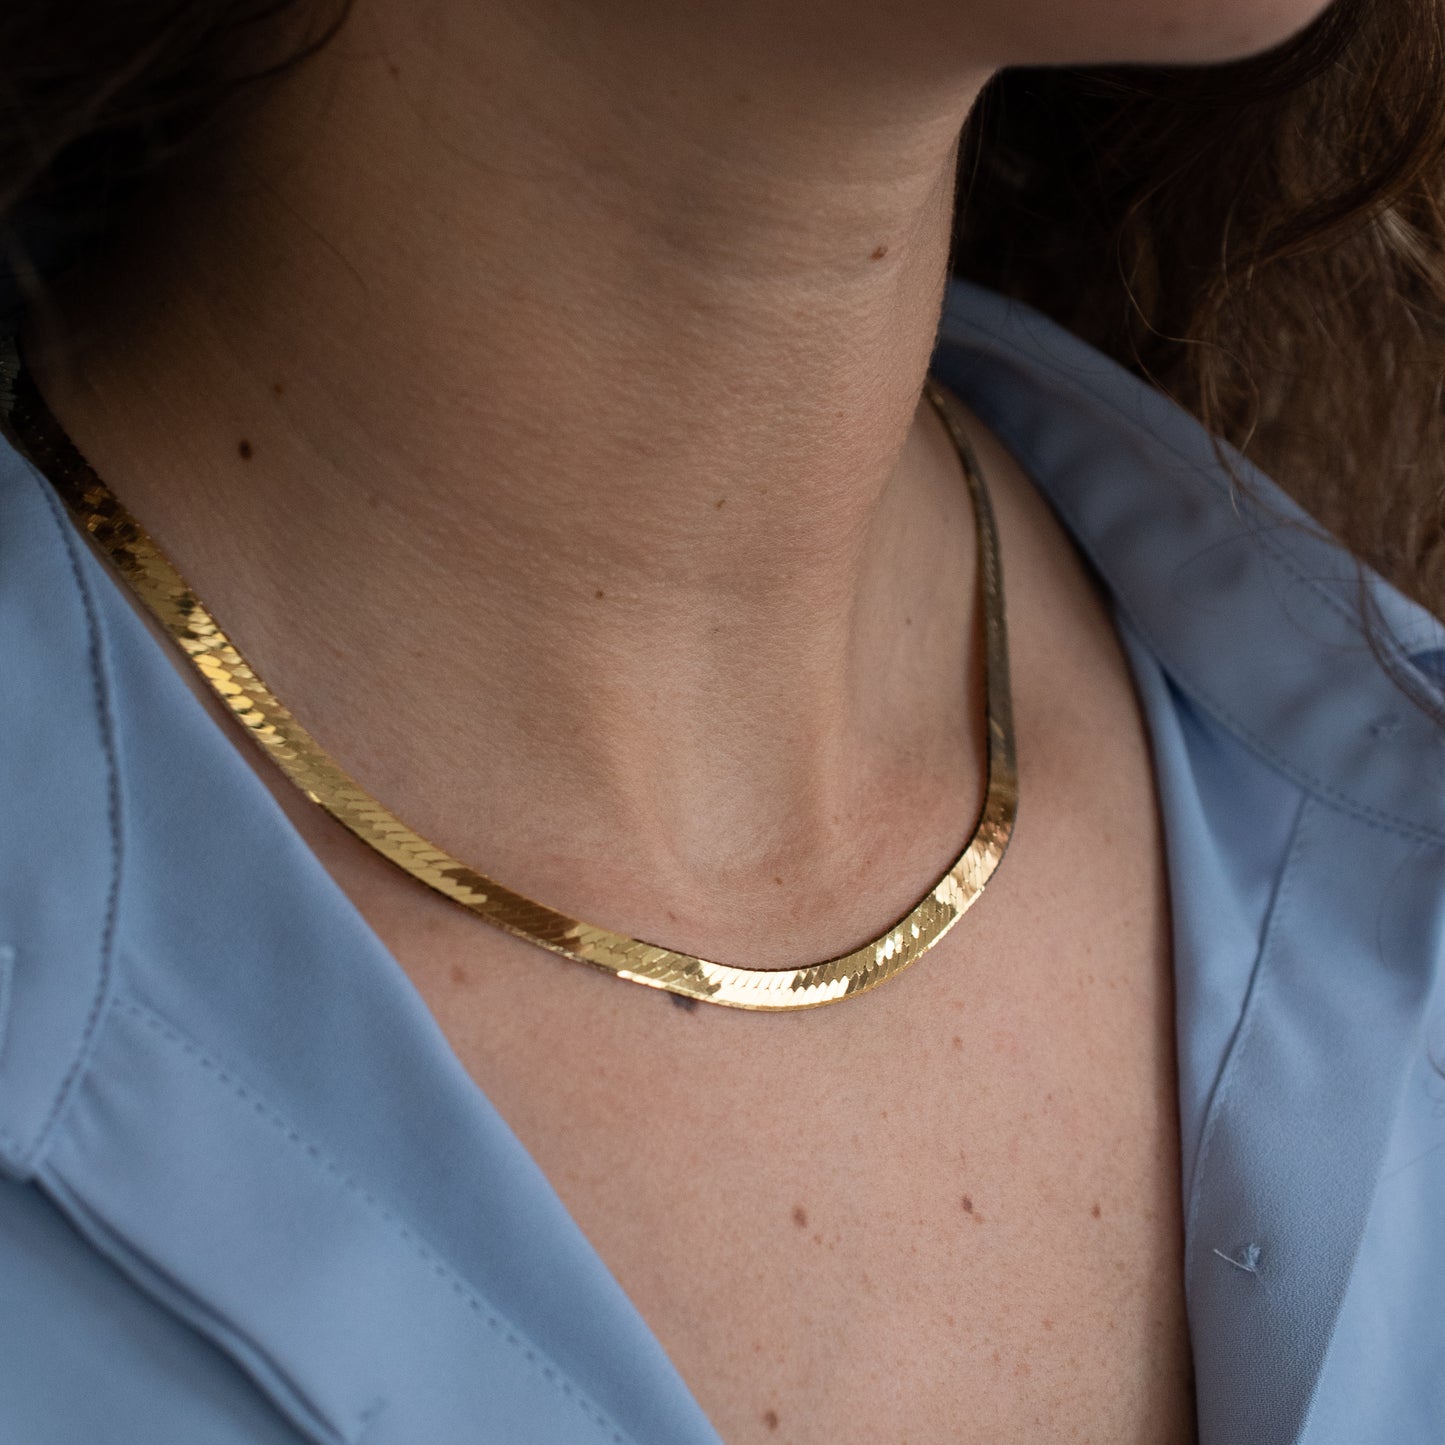 The Midi Herringbone Necklace